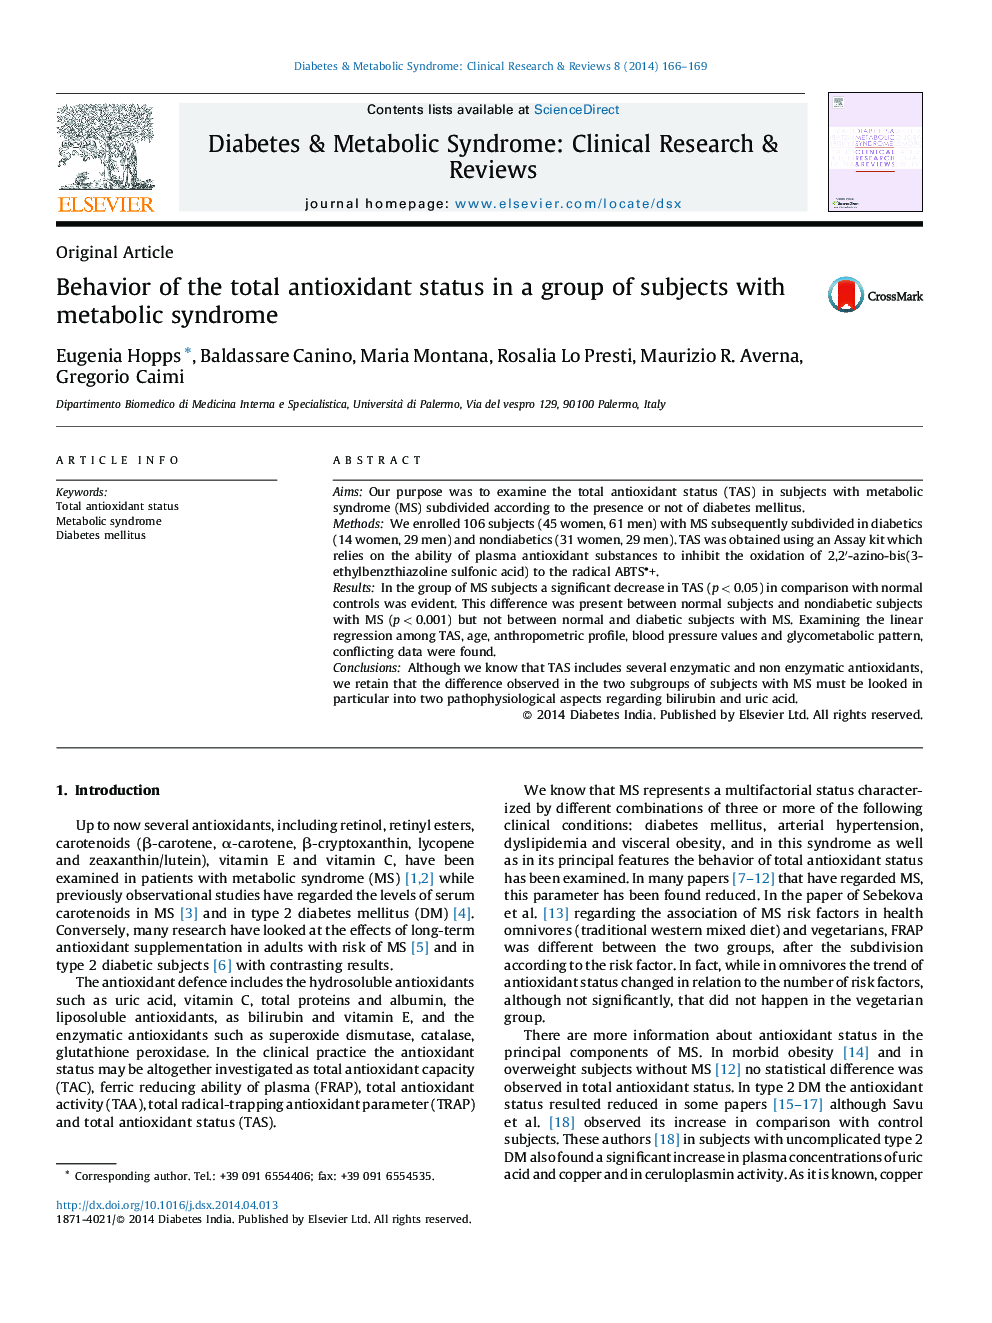 رفتار وضعیت کل آنتیاکسیدانی در یک گروه از افراد مبتلا به سندرم متابولیک 